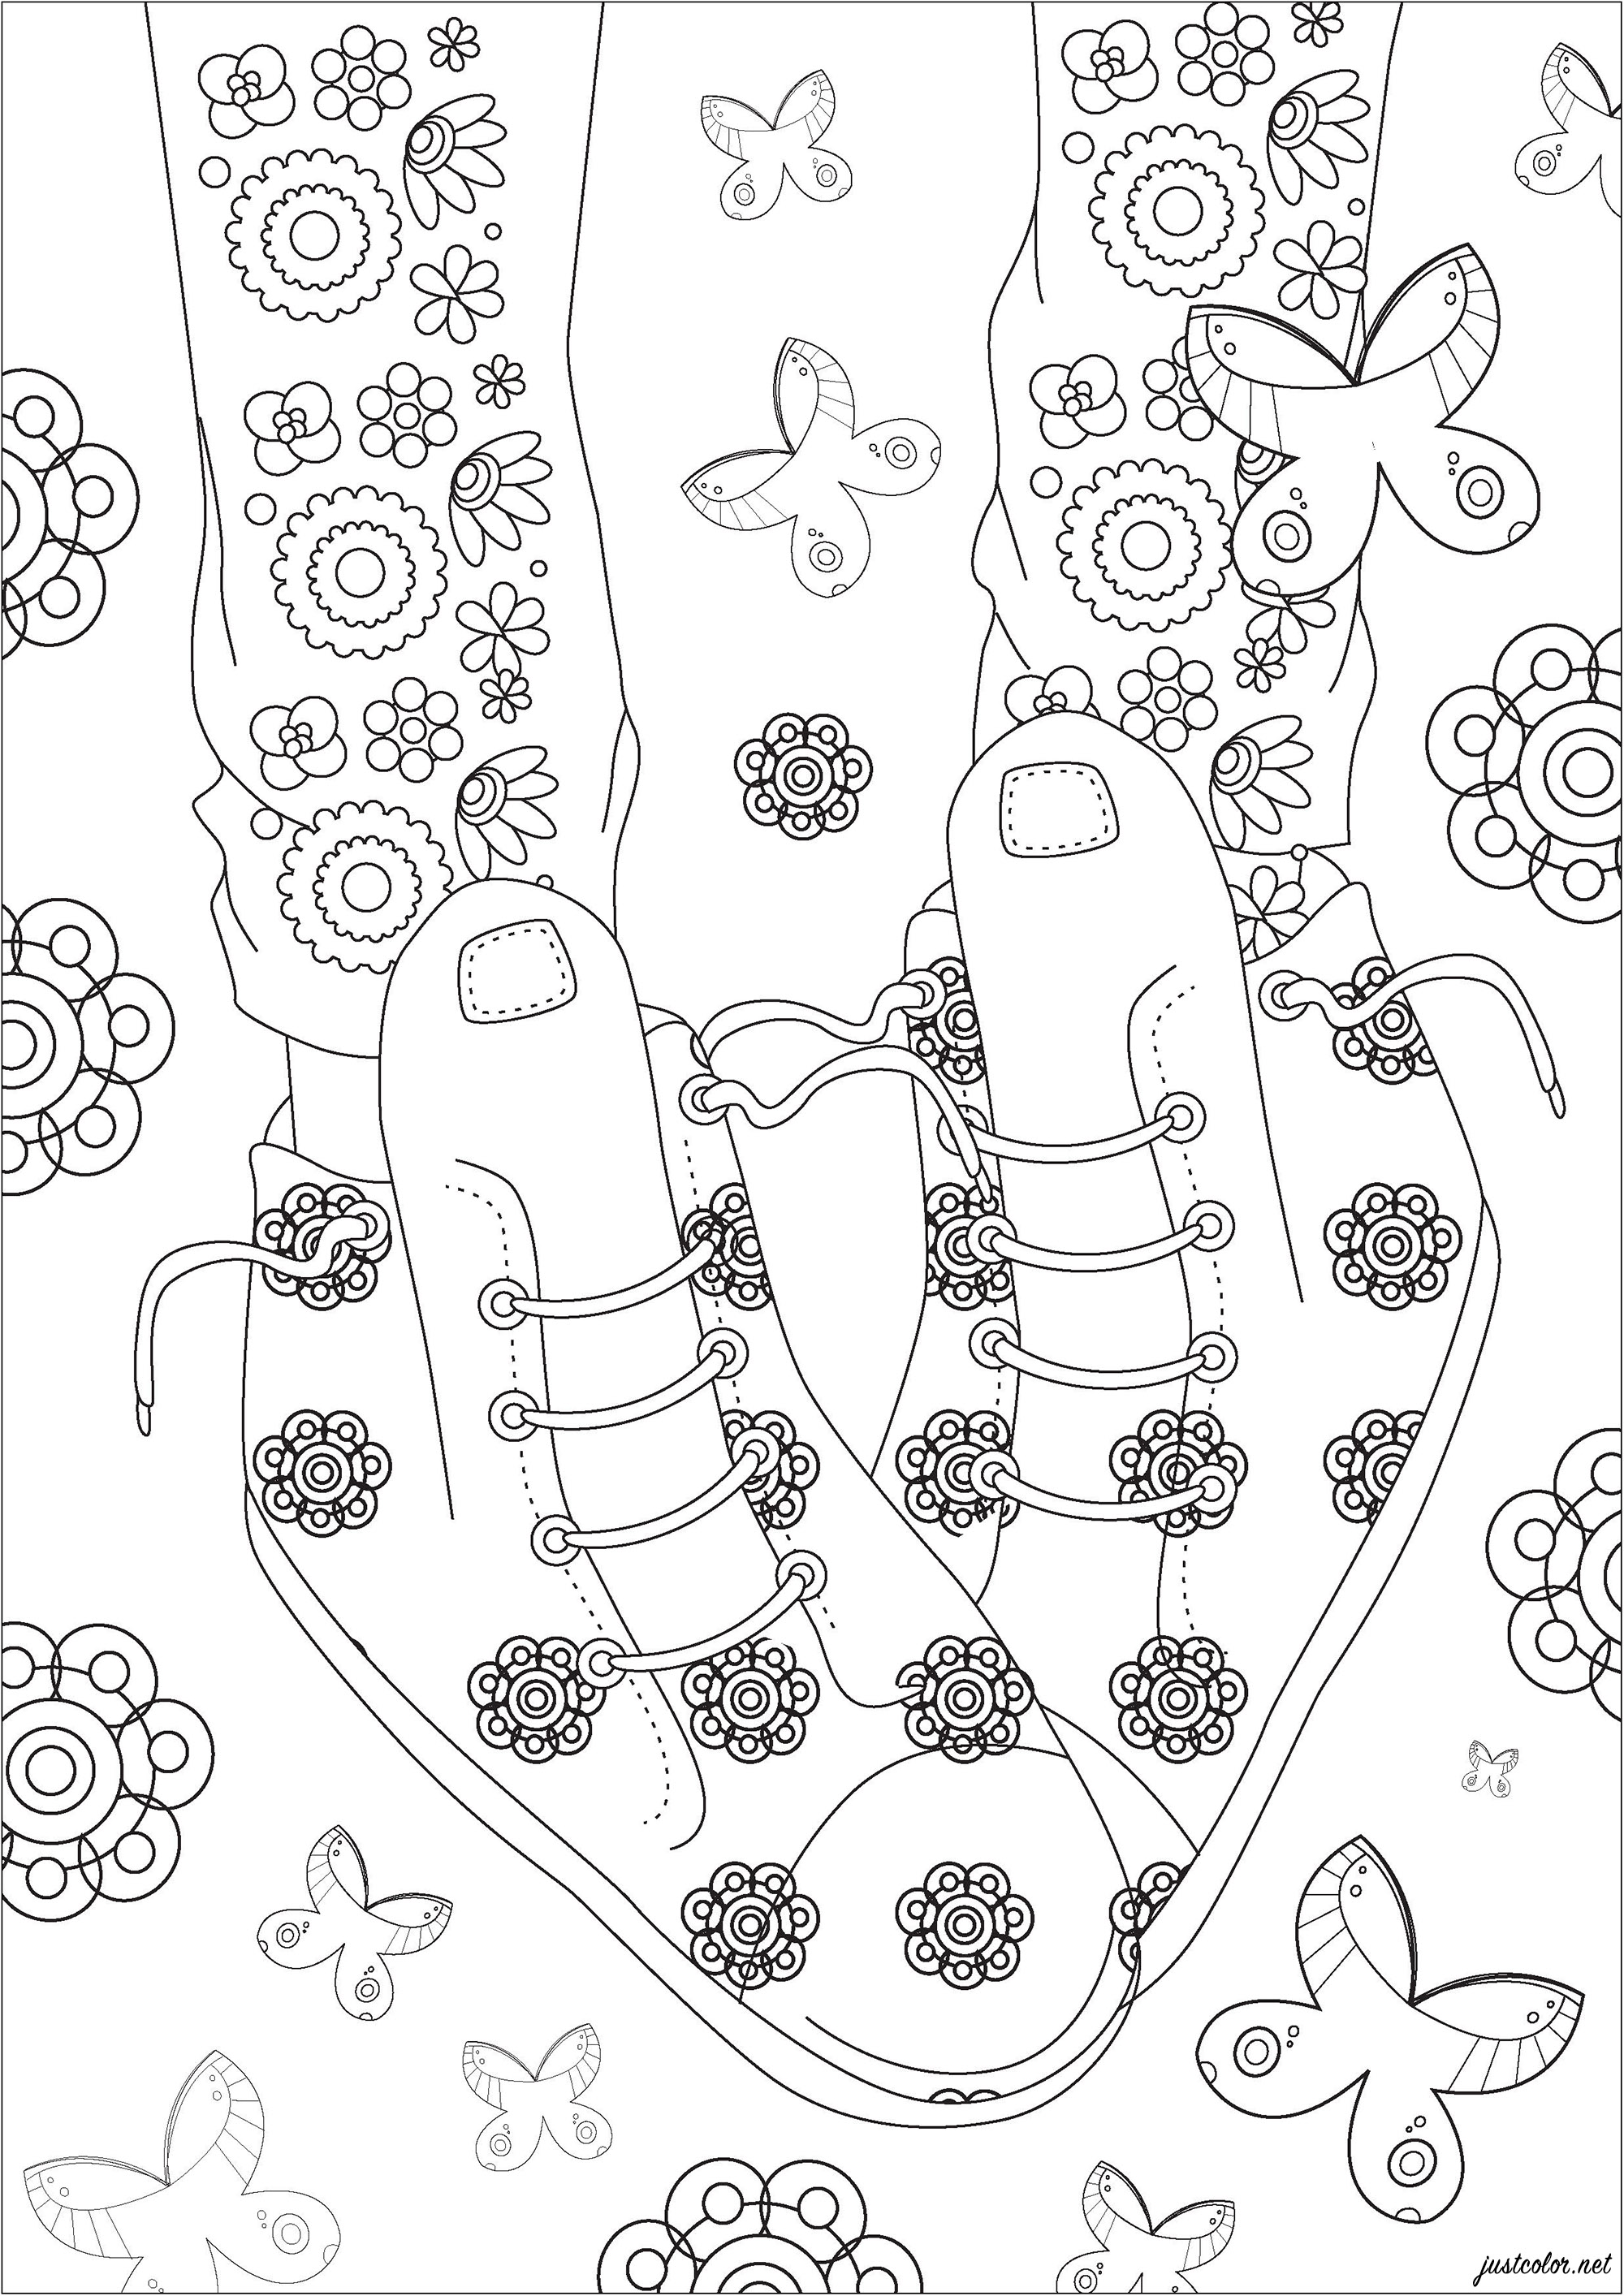 Sapatos e atacadores com motivos florais e borboletas. Nesta página para colorir, vemos um par de sapatos com bonitos motivos florais.Muitas borboletas estão a voar à volta deles.